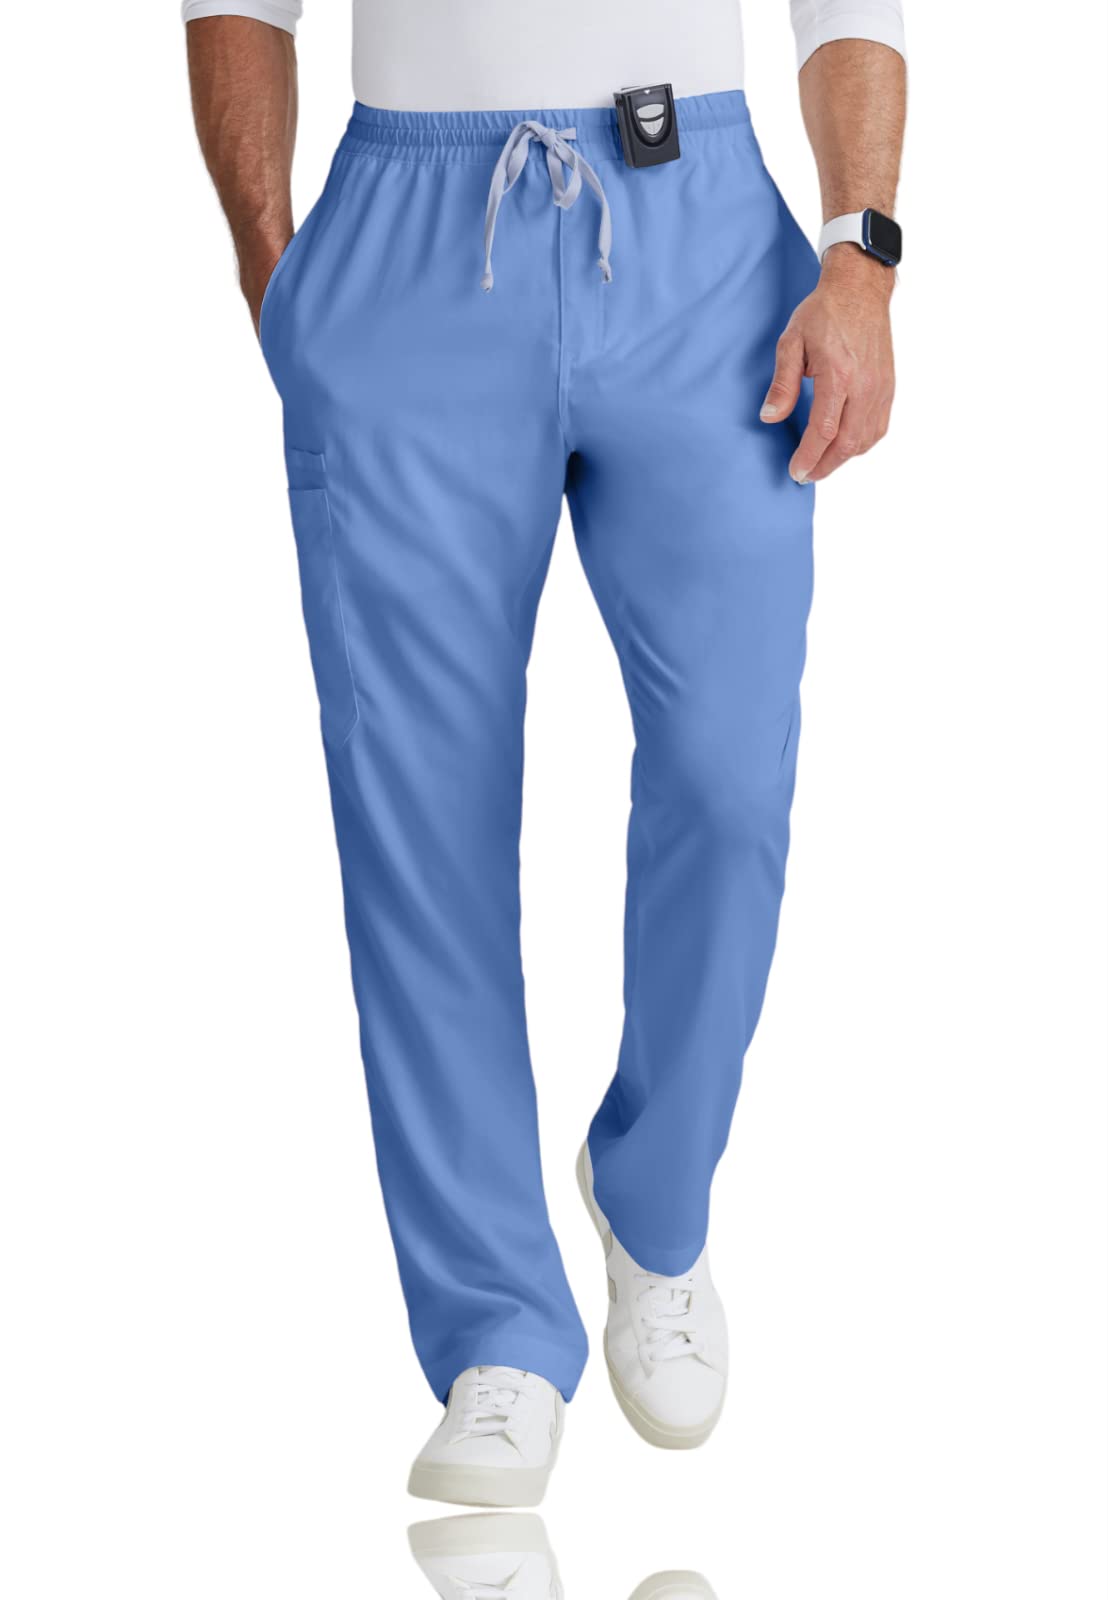 BARCO Grey's Anatomy Scrubs – Evan Scrub Hose für Herren, elastischer Bund mit Reißverschluss, gerades Bein, himmelblau, Medium Kurz